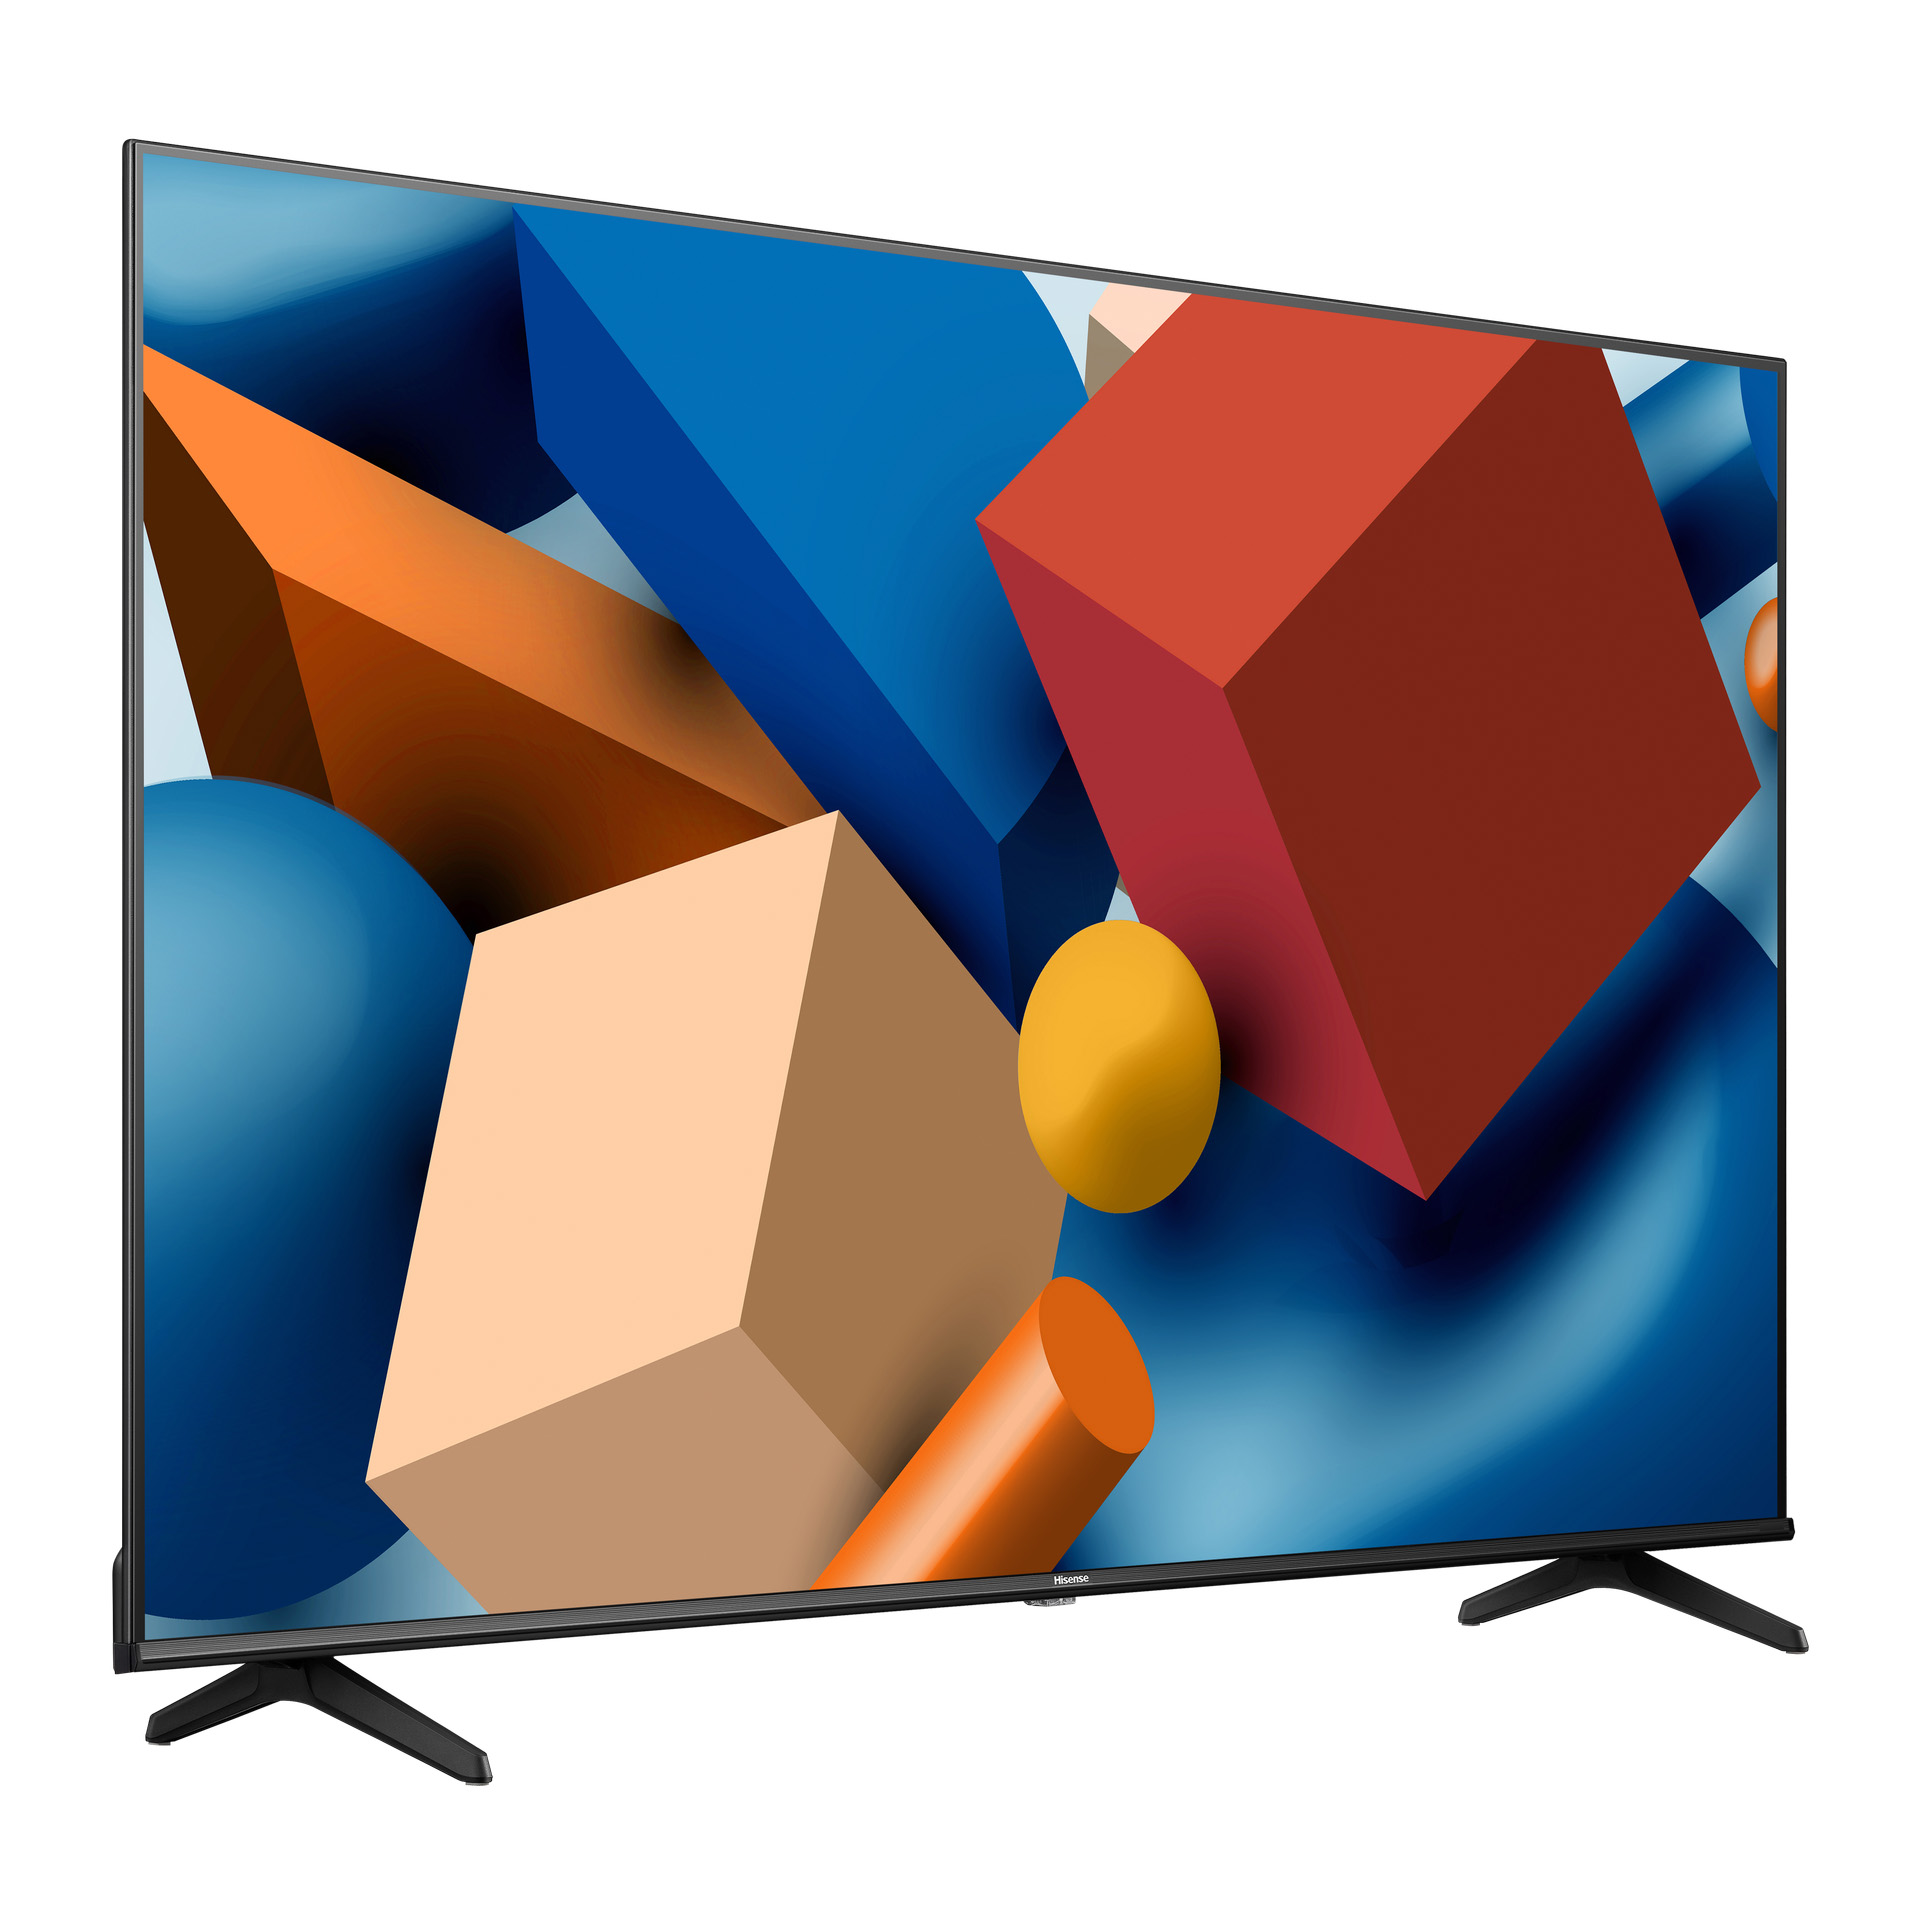 LED TV HISENSE 43A6K 4K UHD Smart TV LED TV (Flat, 43 Zoll / 108 cm, UHD  4K, SMART TV, VIDAA U6)